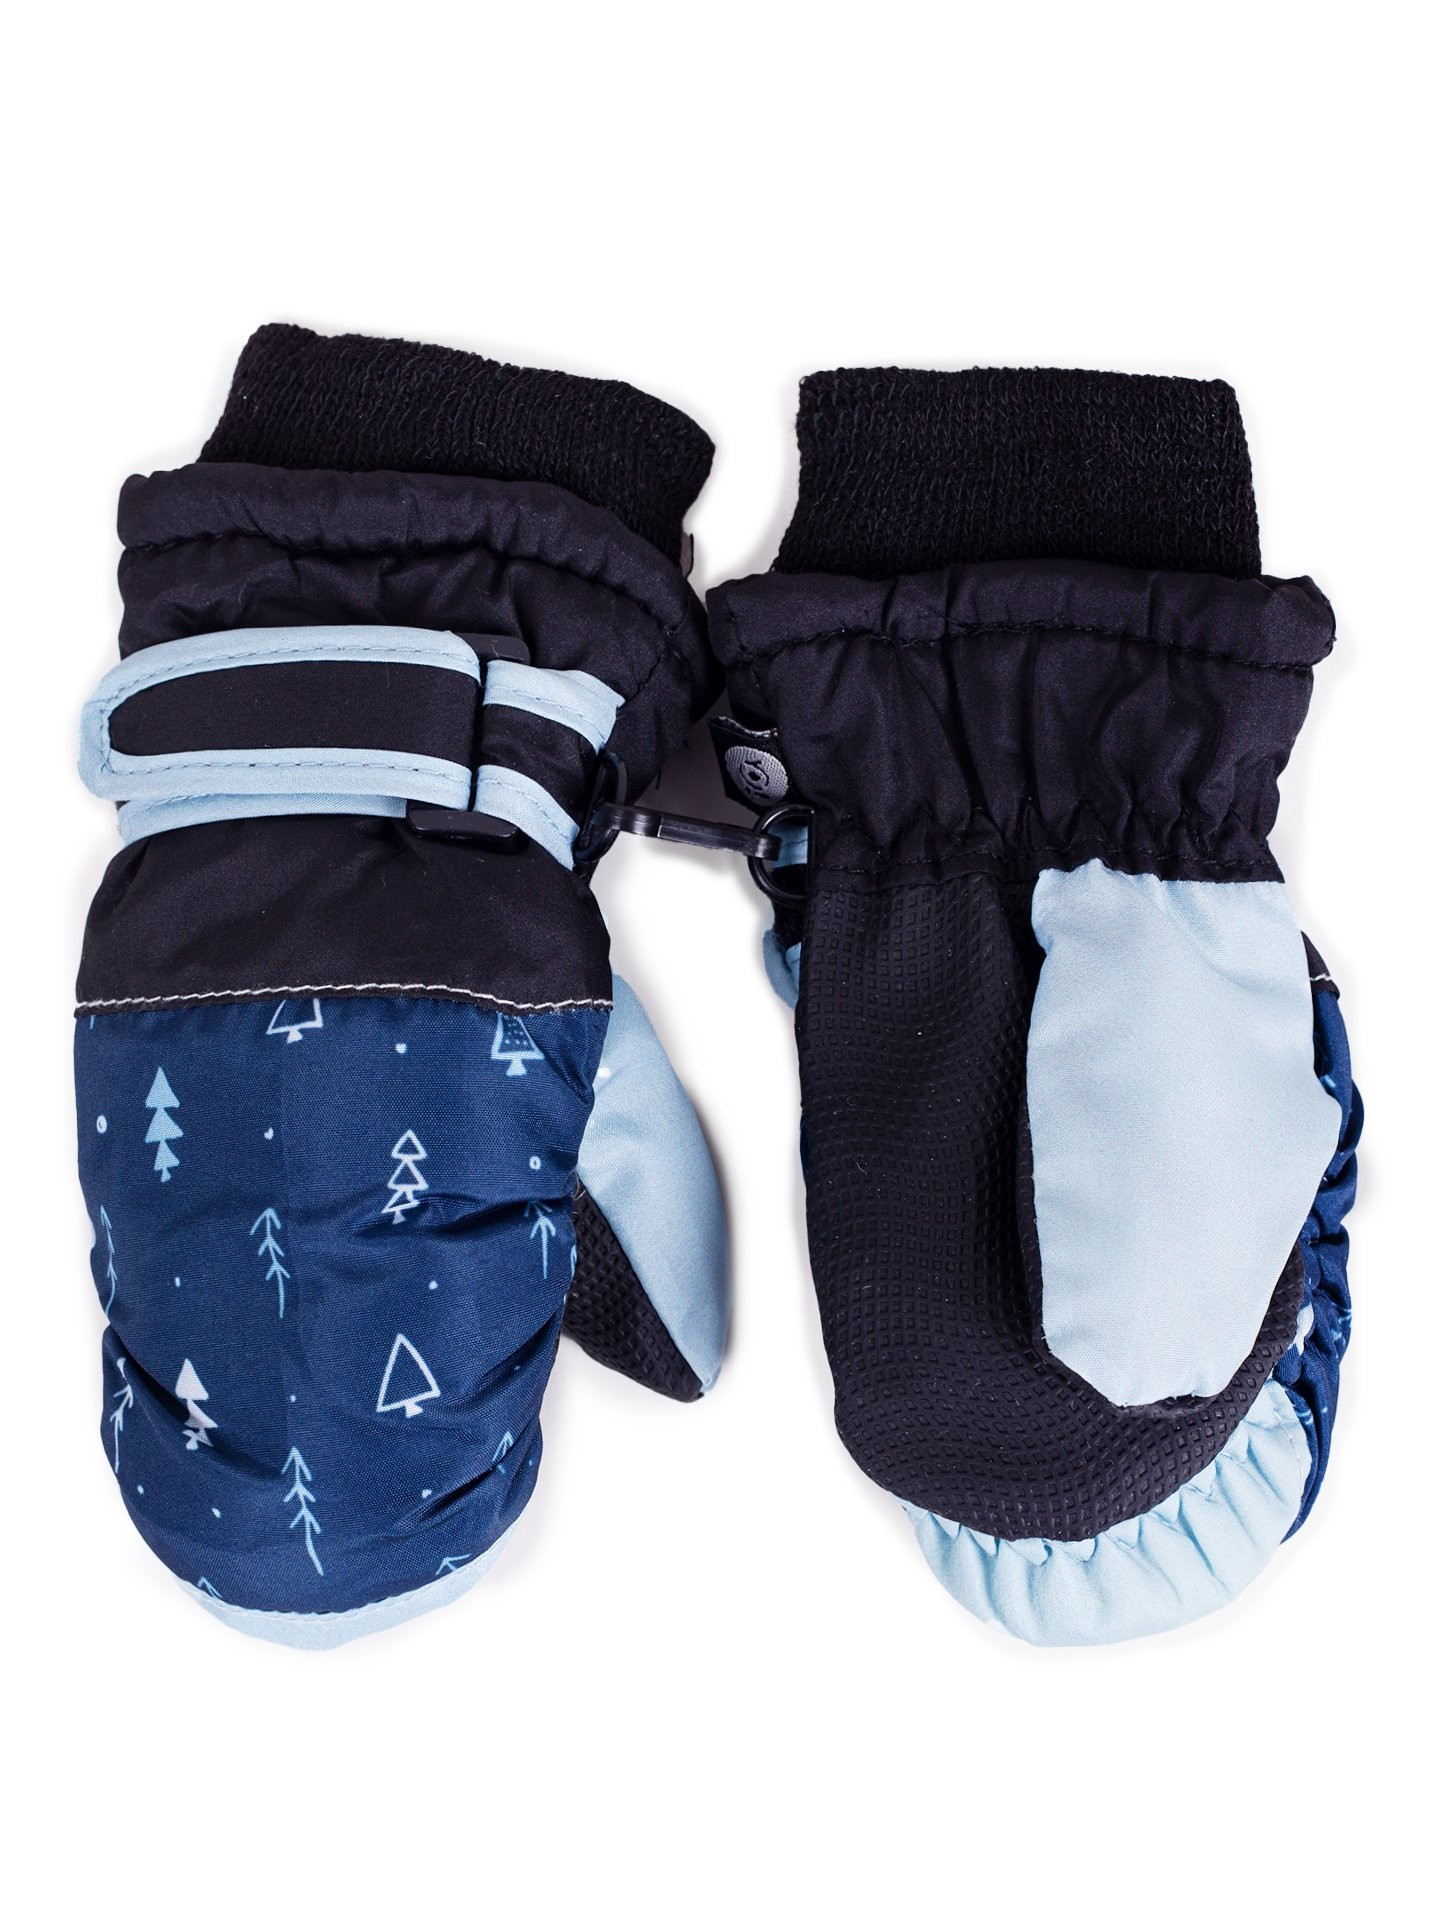 Dětské zimní lyžařské rukavice Yoclub REN-0227C-A110 Navy Blue 10